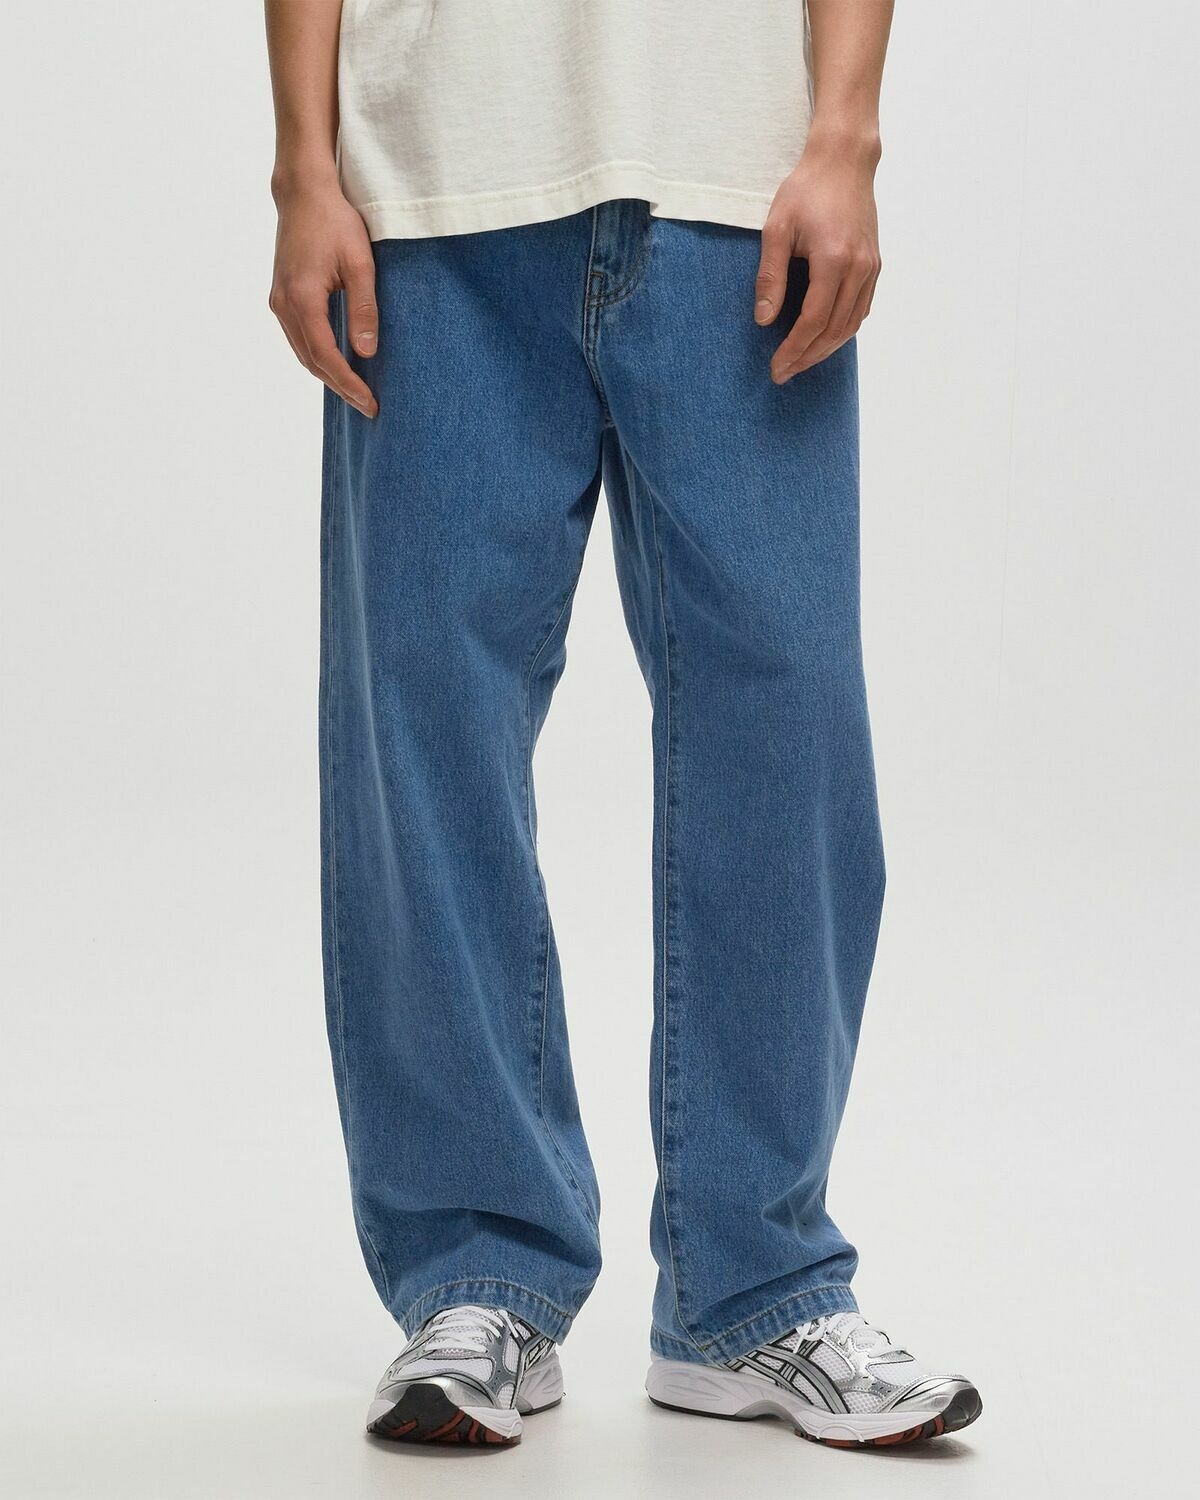 Carhartt Wip Landon Pant Blue - Mens - Jeans Carhartt WIP